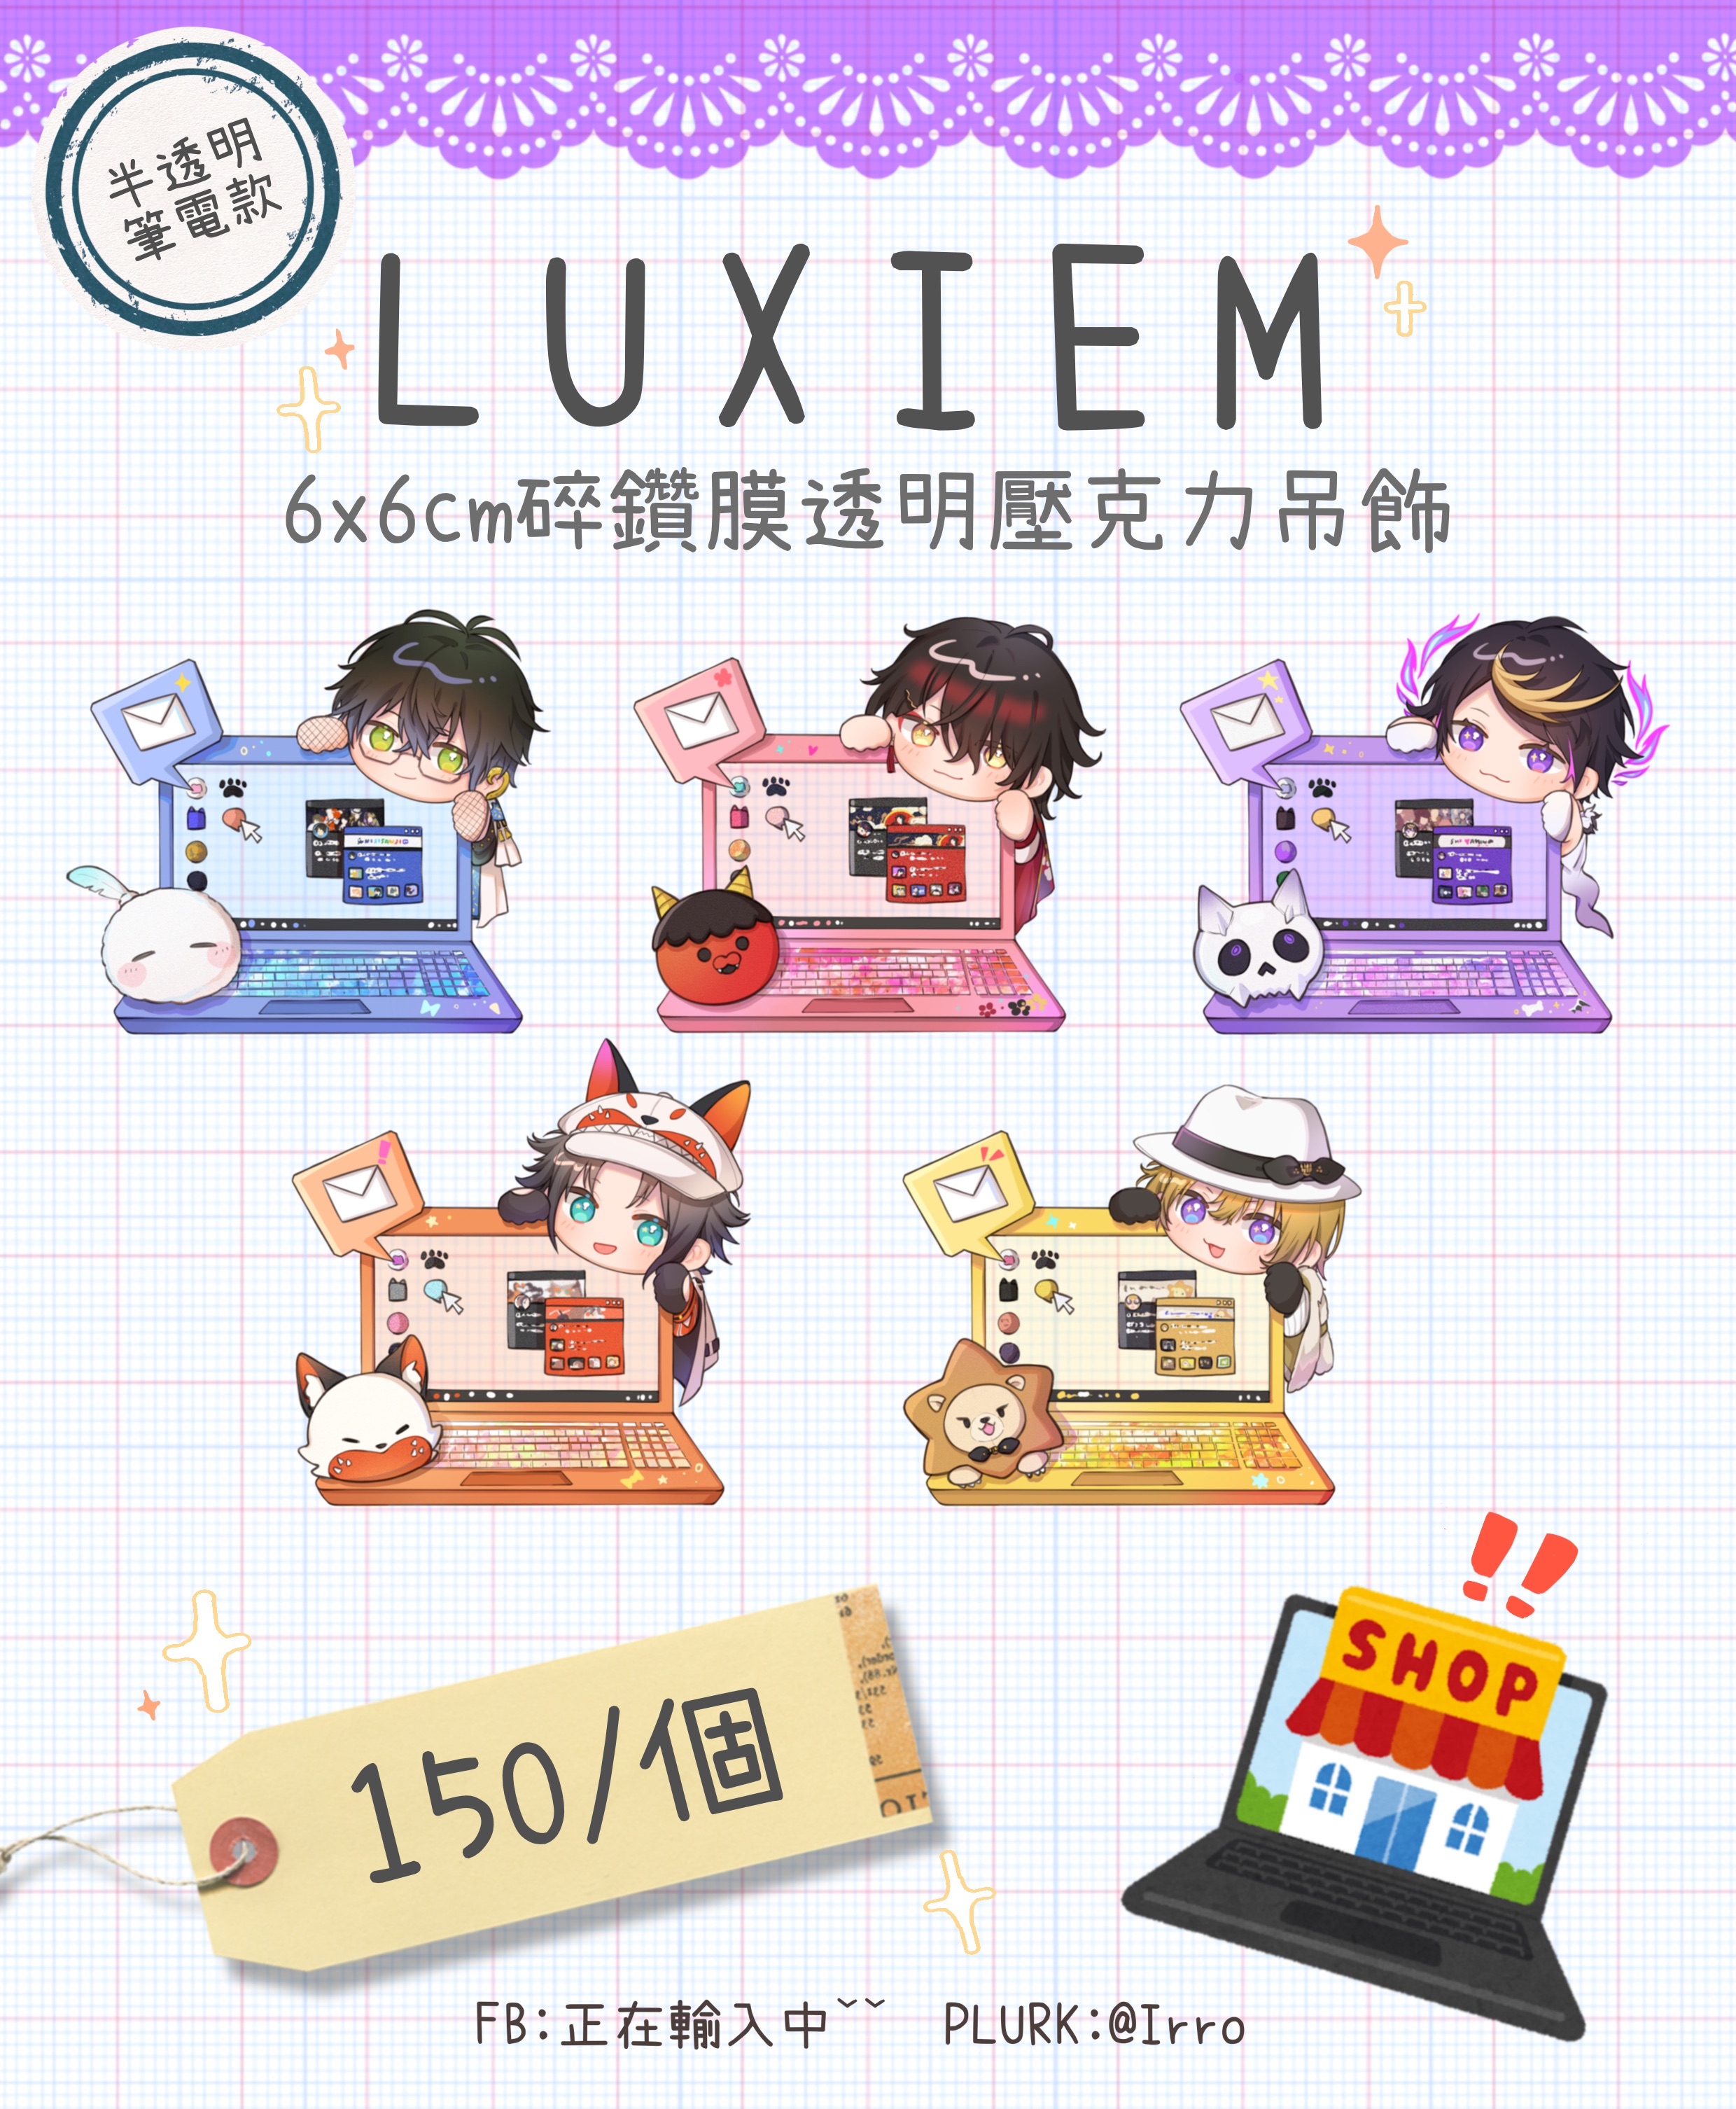 【現貨】Luxiem6x6cm碎鑽膜壓克力吊飾-半透明筆電款